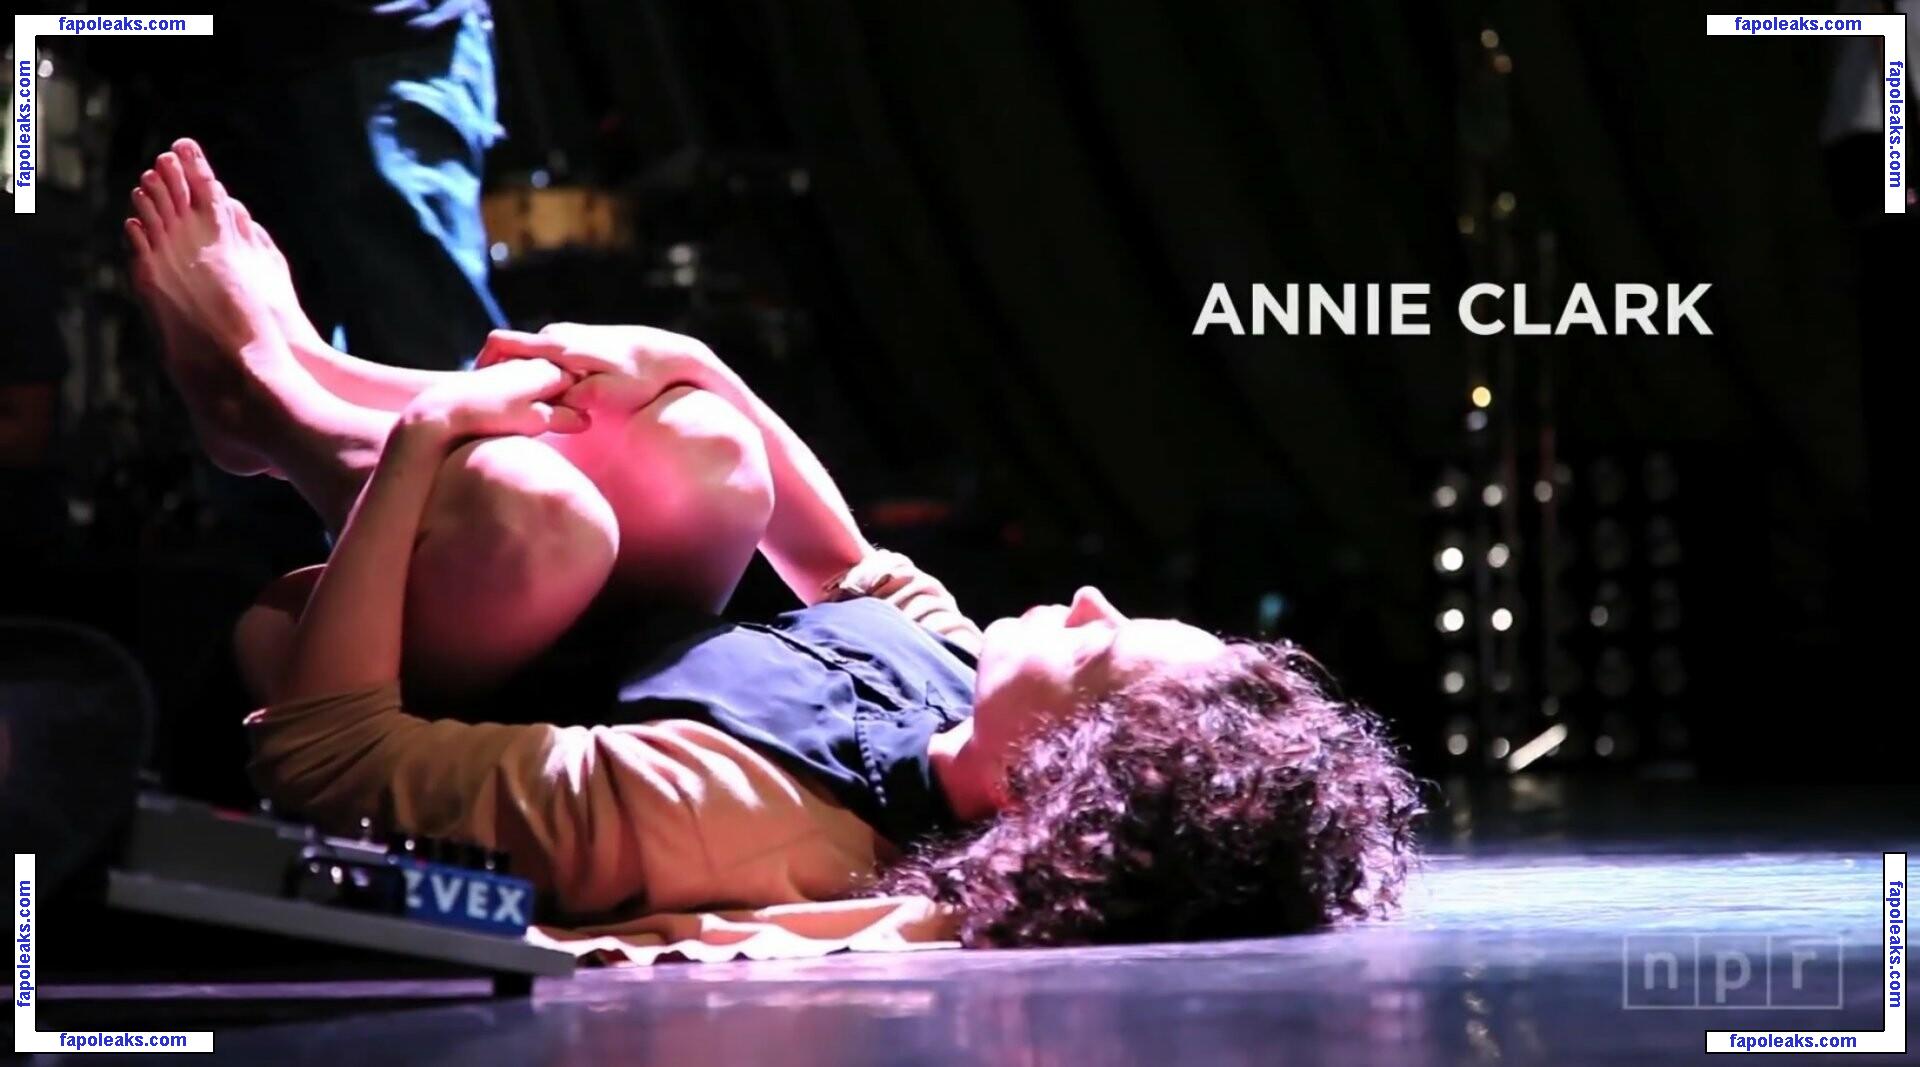 Annie Clark / annie__clark nude photo #0005 from OnlyFans